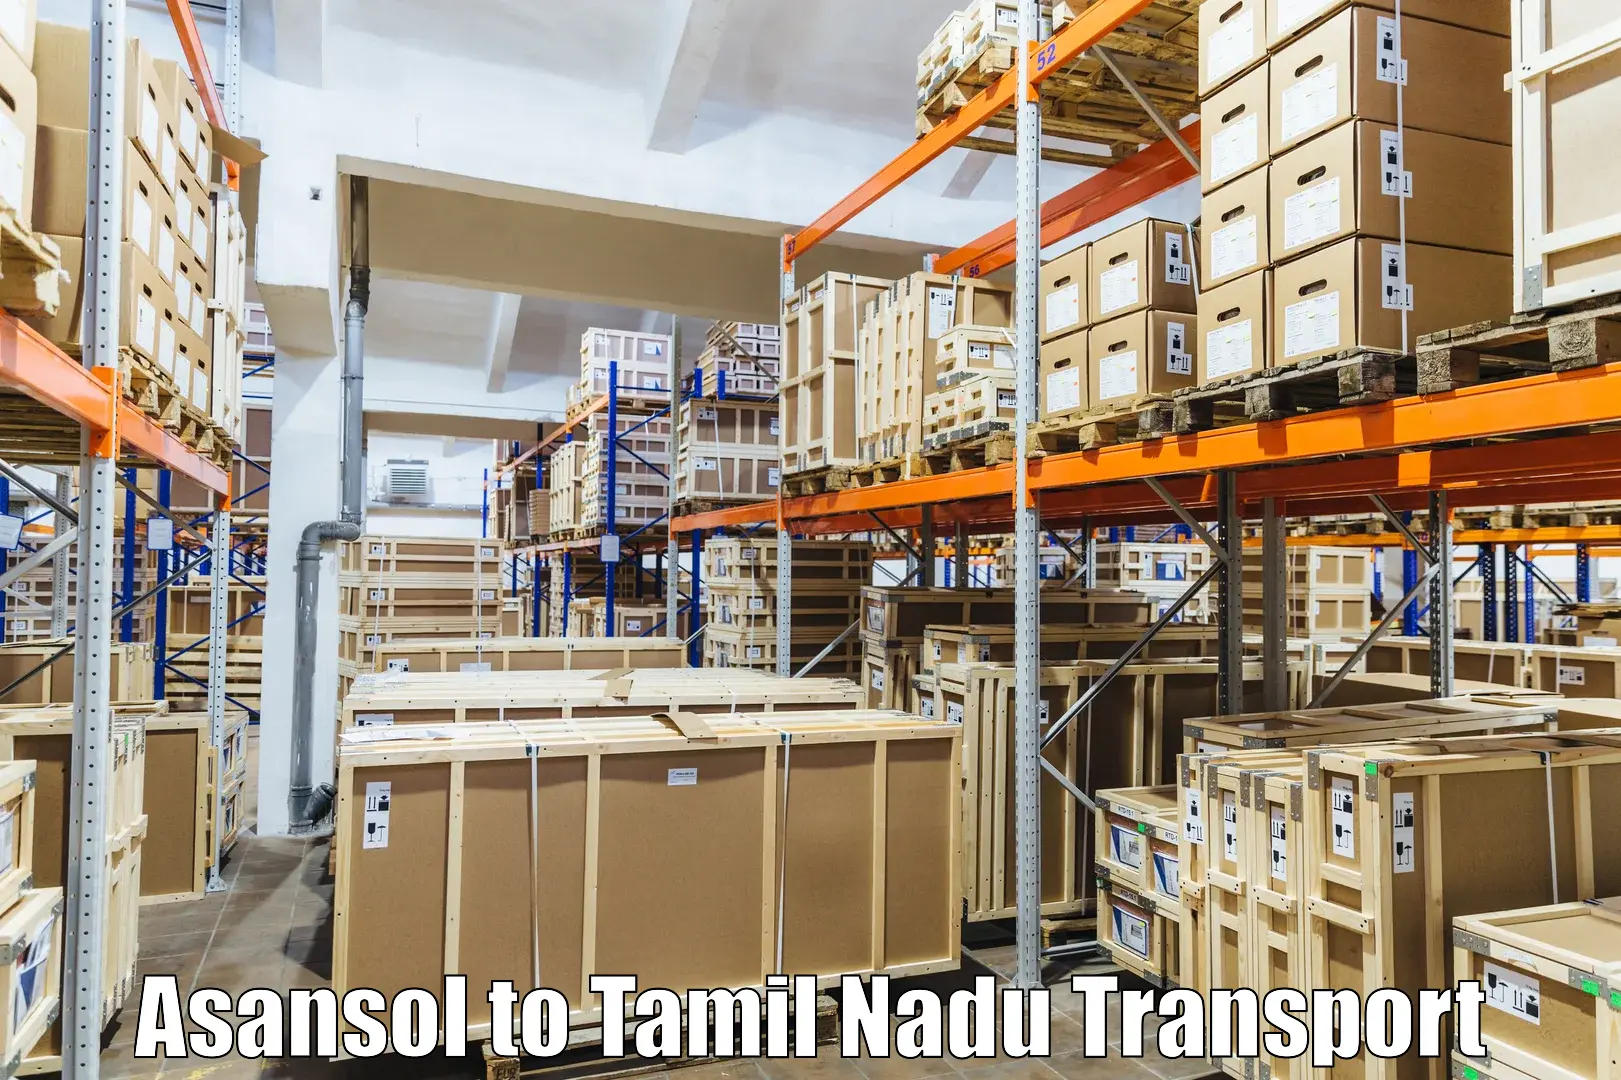 Nationwide transport services Asansol to Kangeyam